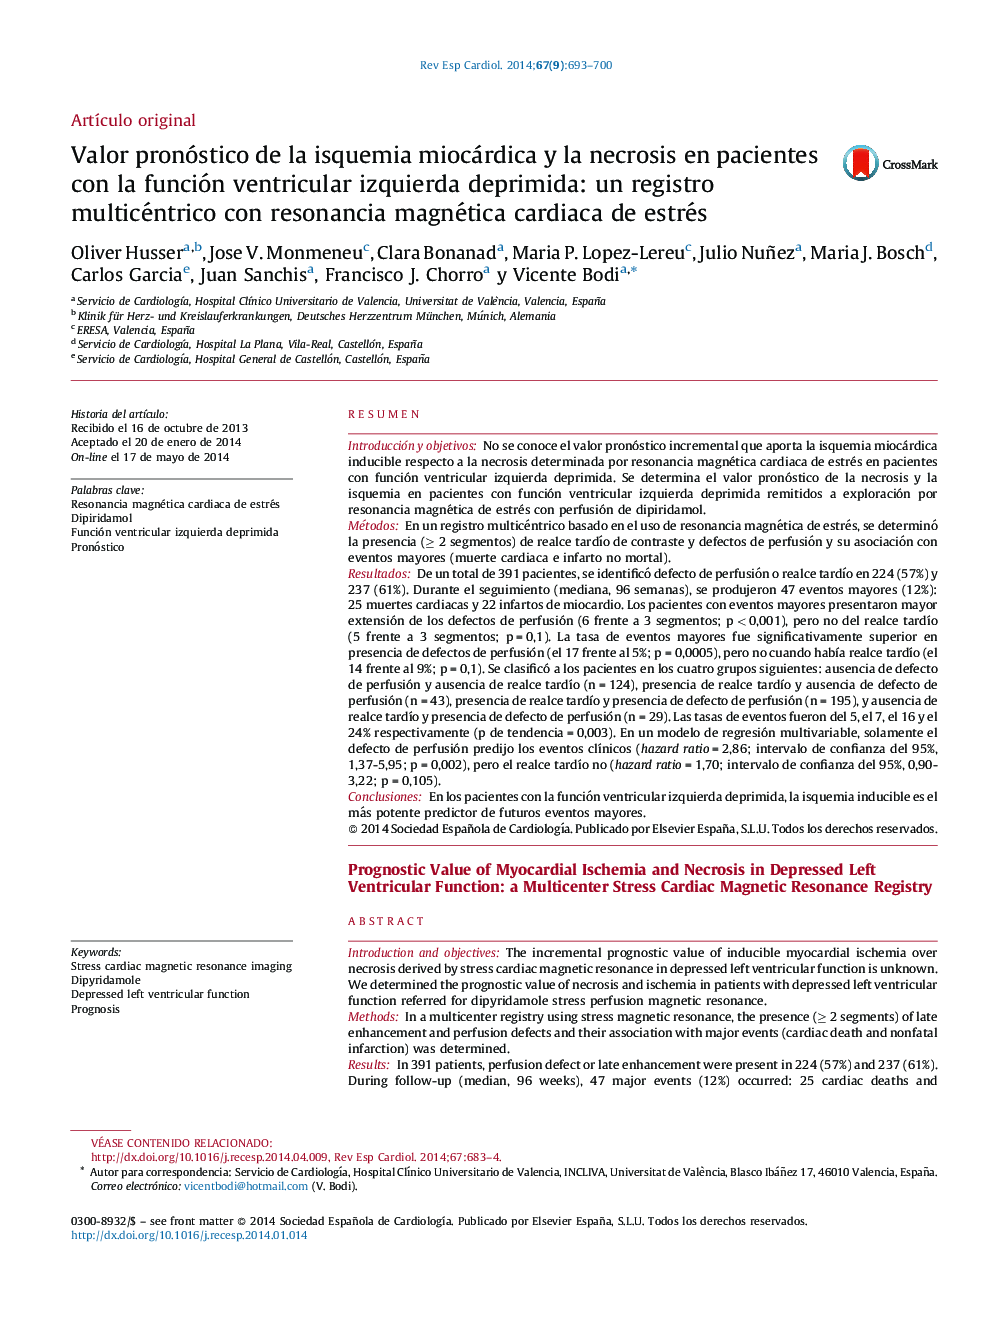 Valor pronóstico de la isquemia miocárdica y la necrosis en pacientes con la función ventricular izquierda deprimida: un registro multicéntrico con resonancia magnética cardiaca de estrés